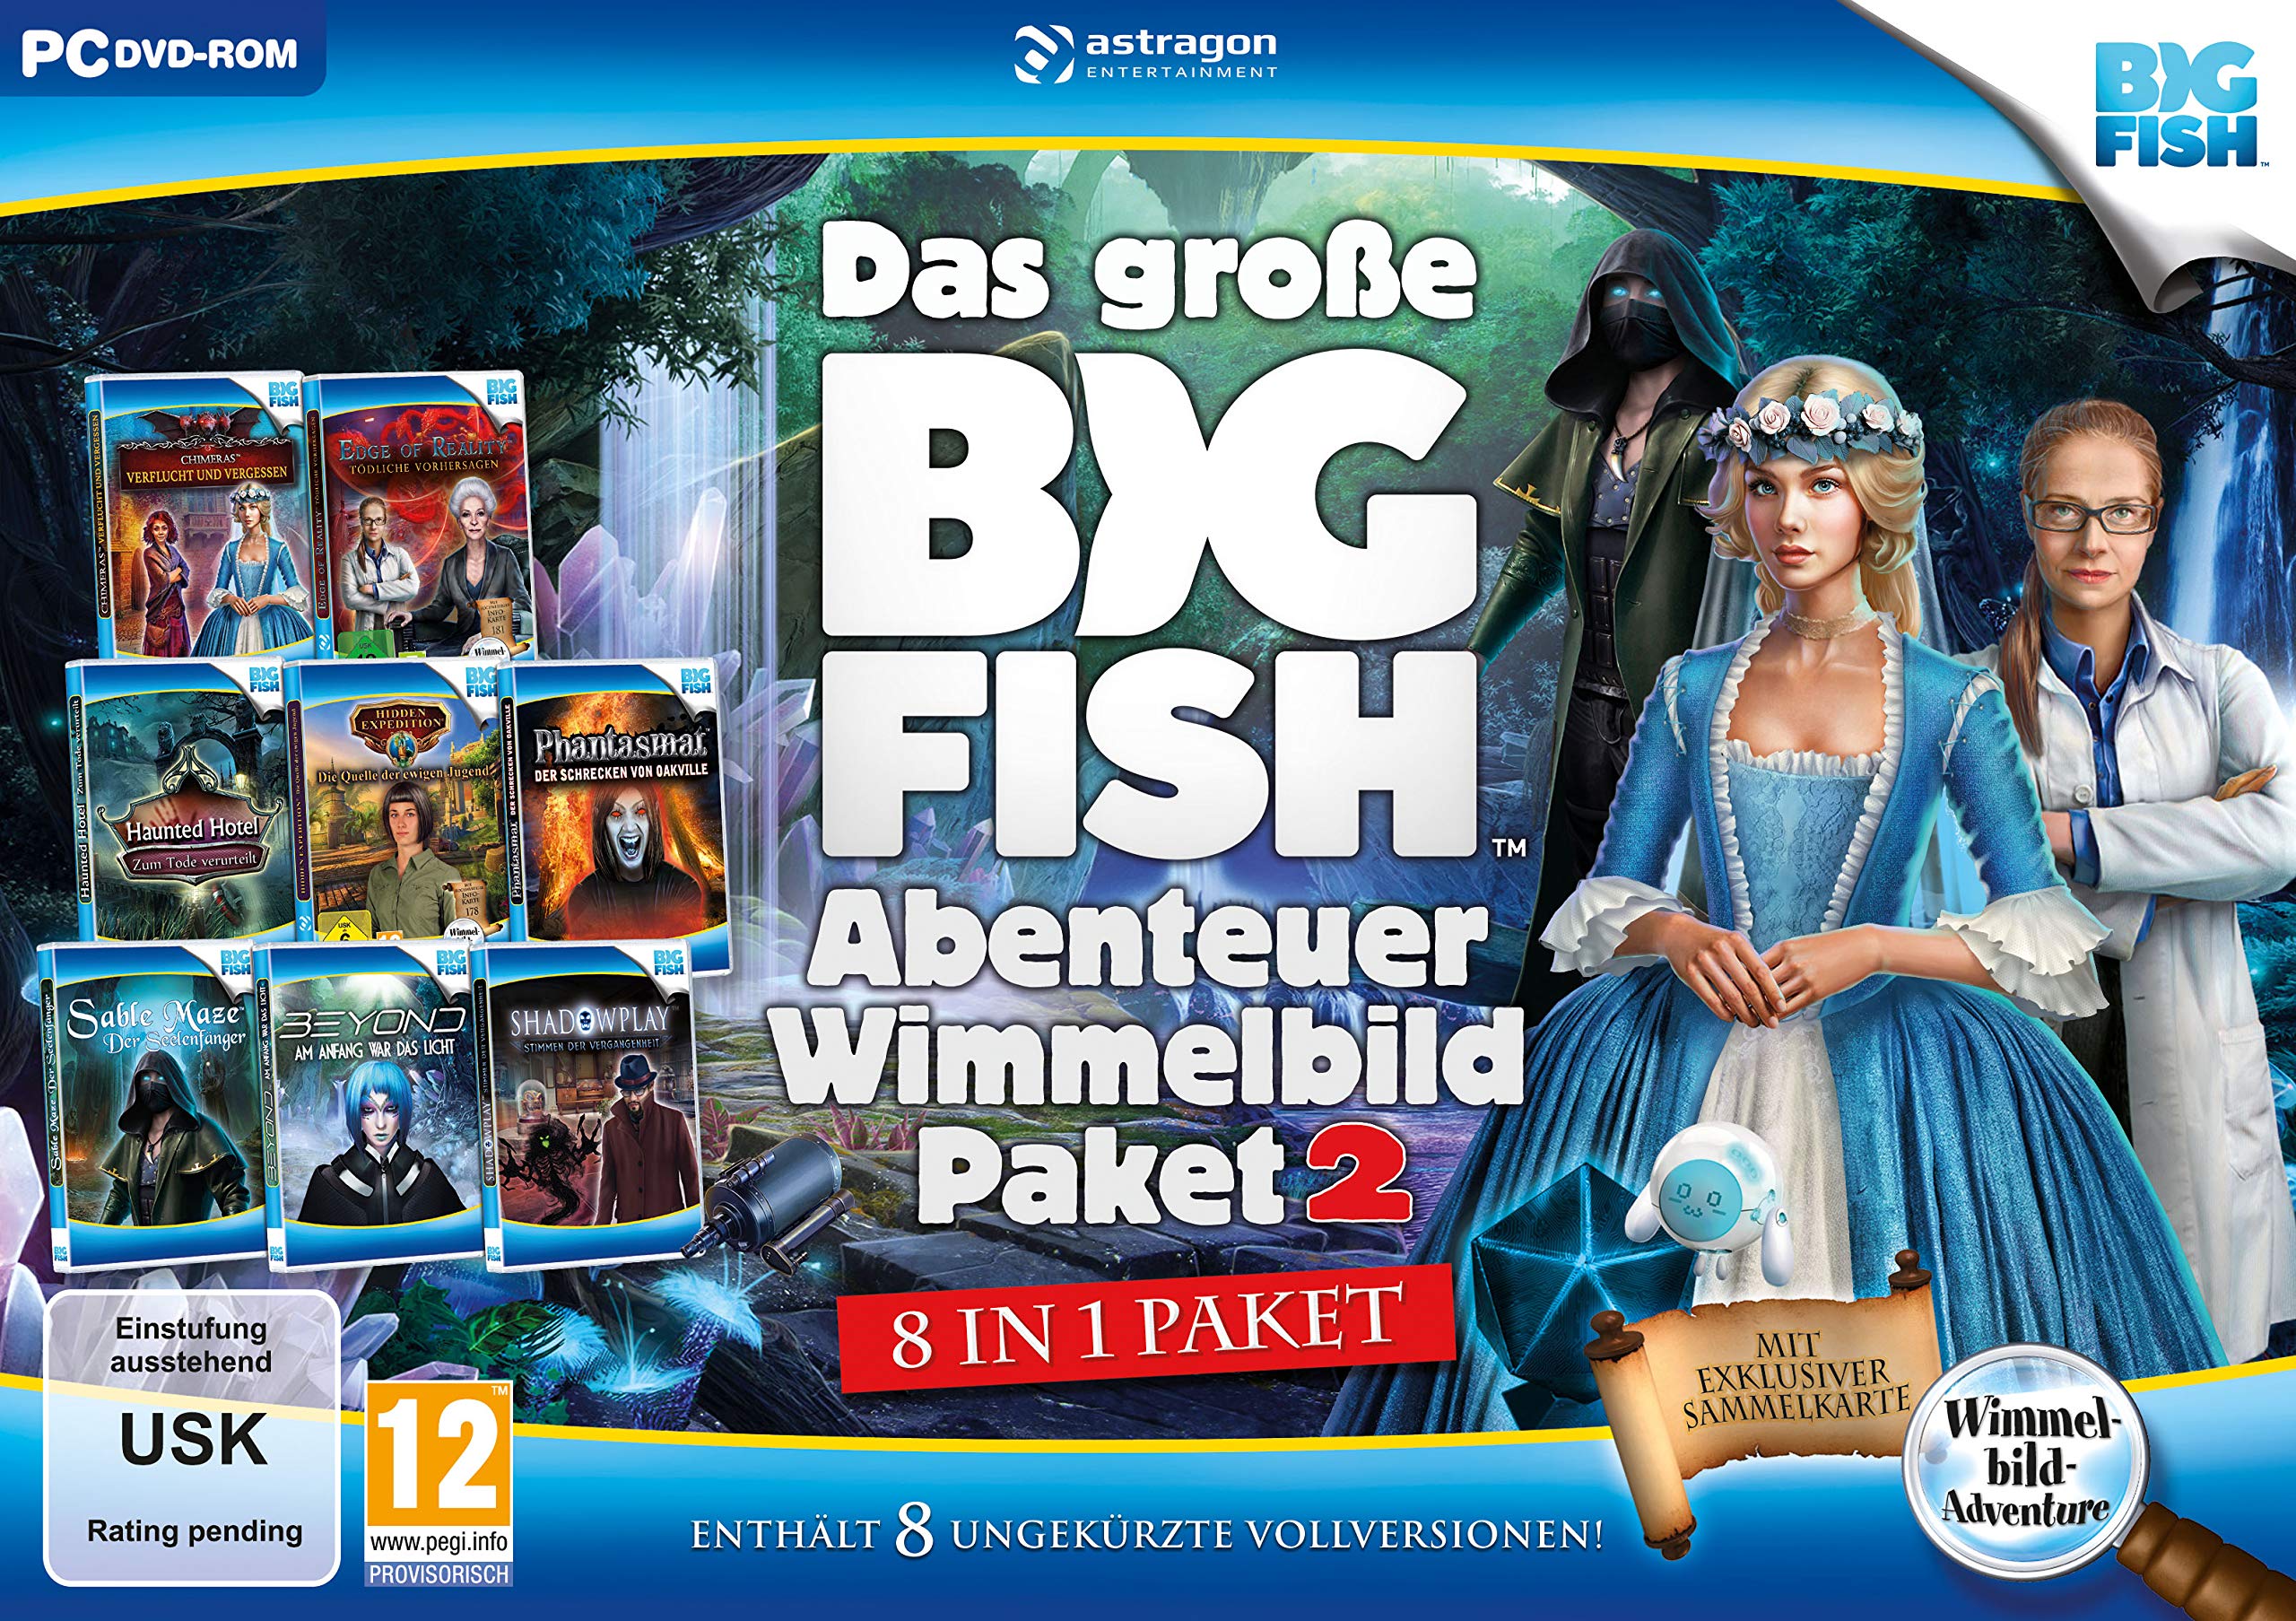 Das-groe-Big-Fish-Abenteuer-Wimmelbild-Paket-2-PC